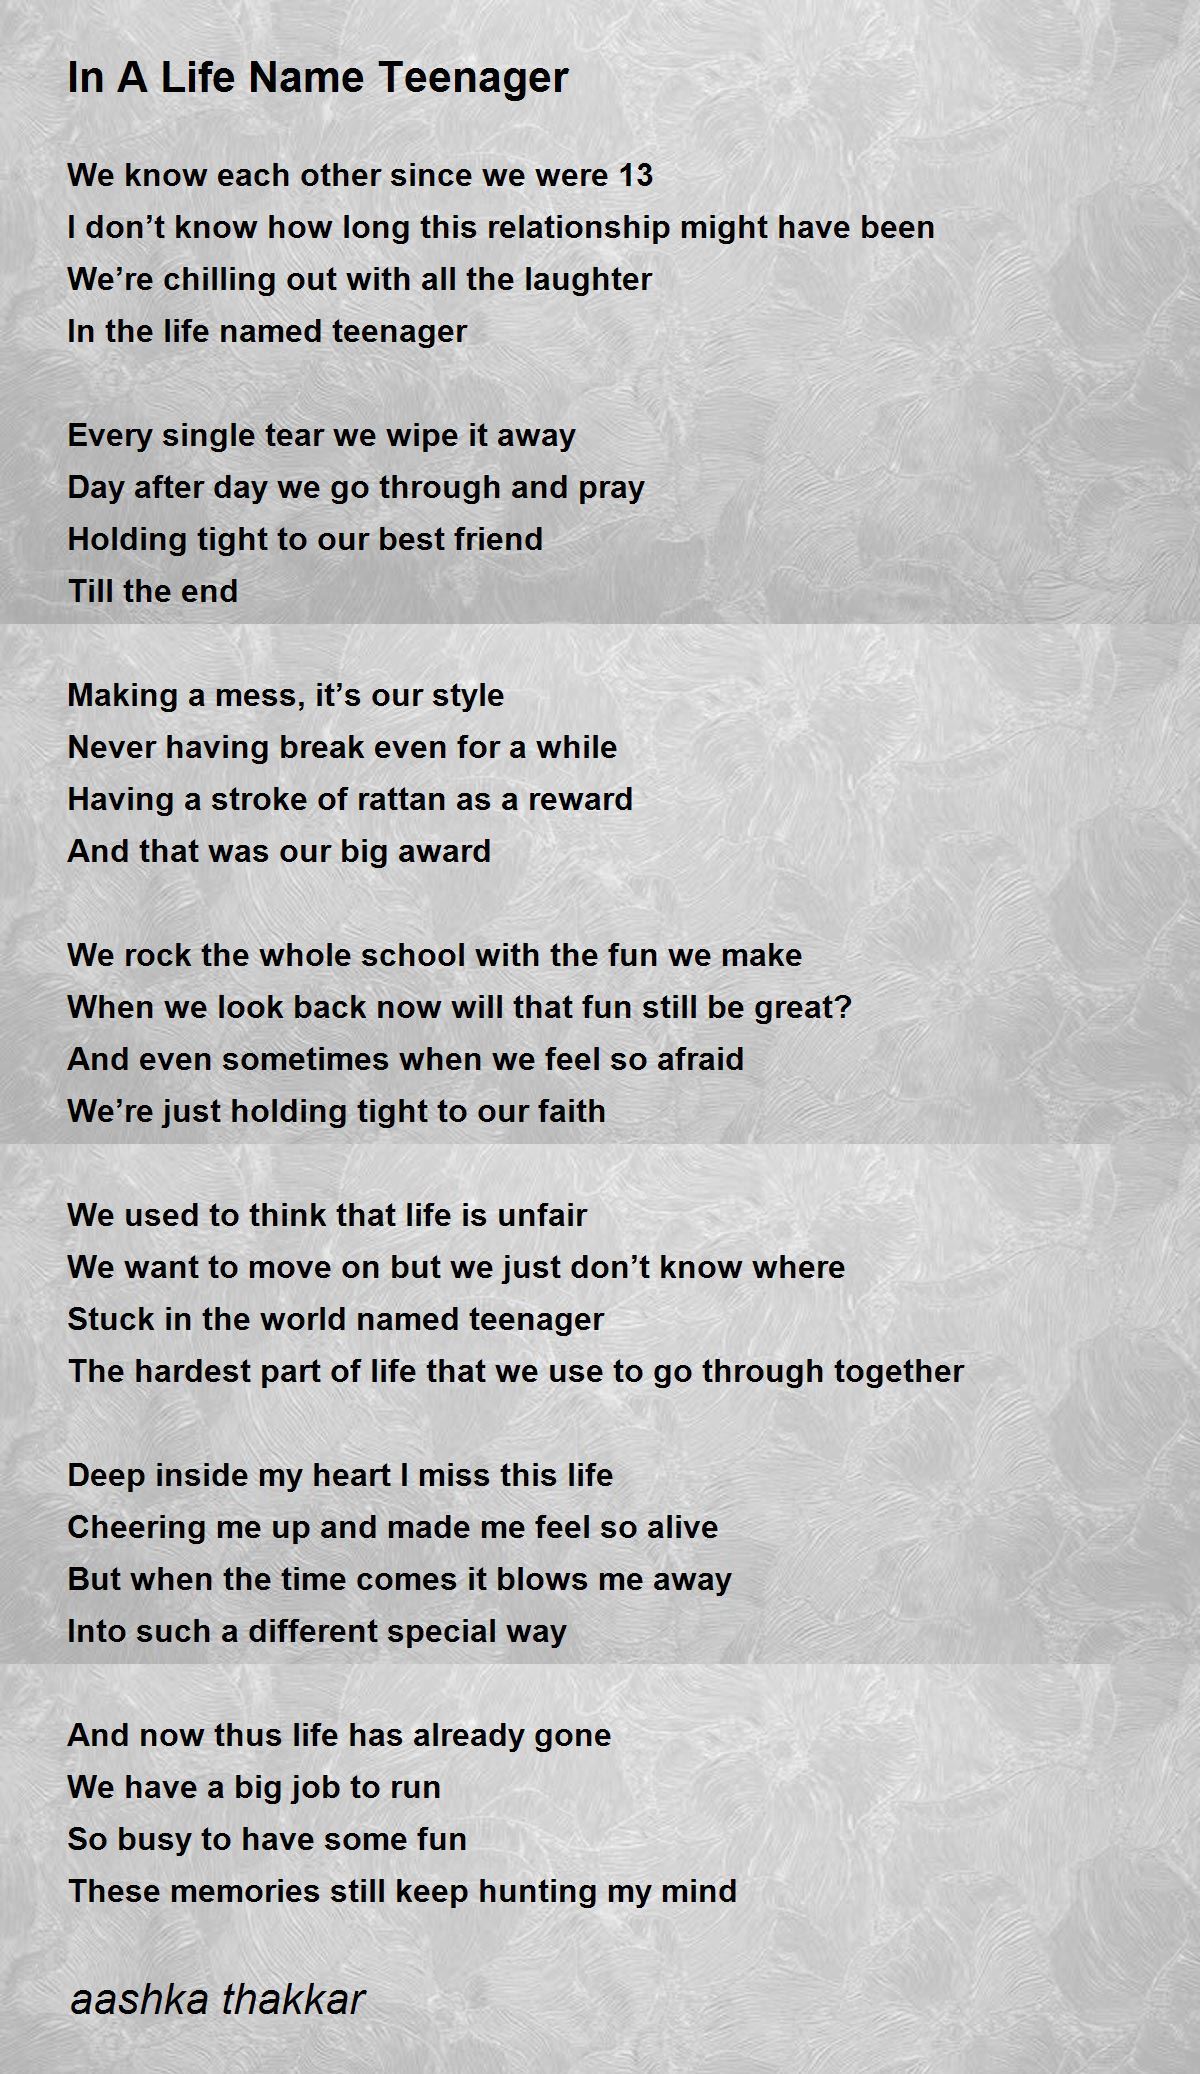 In A Life Name Teenager - In A Life Name Teenager Poem by aashka thakkar